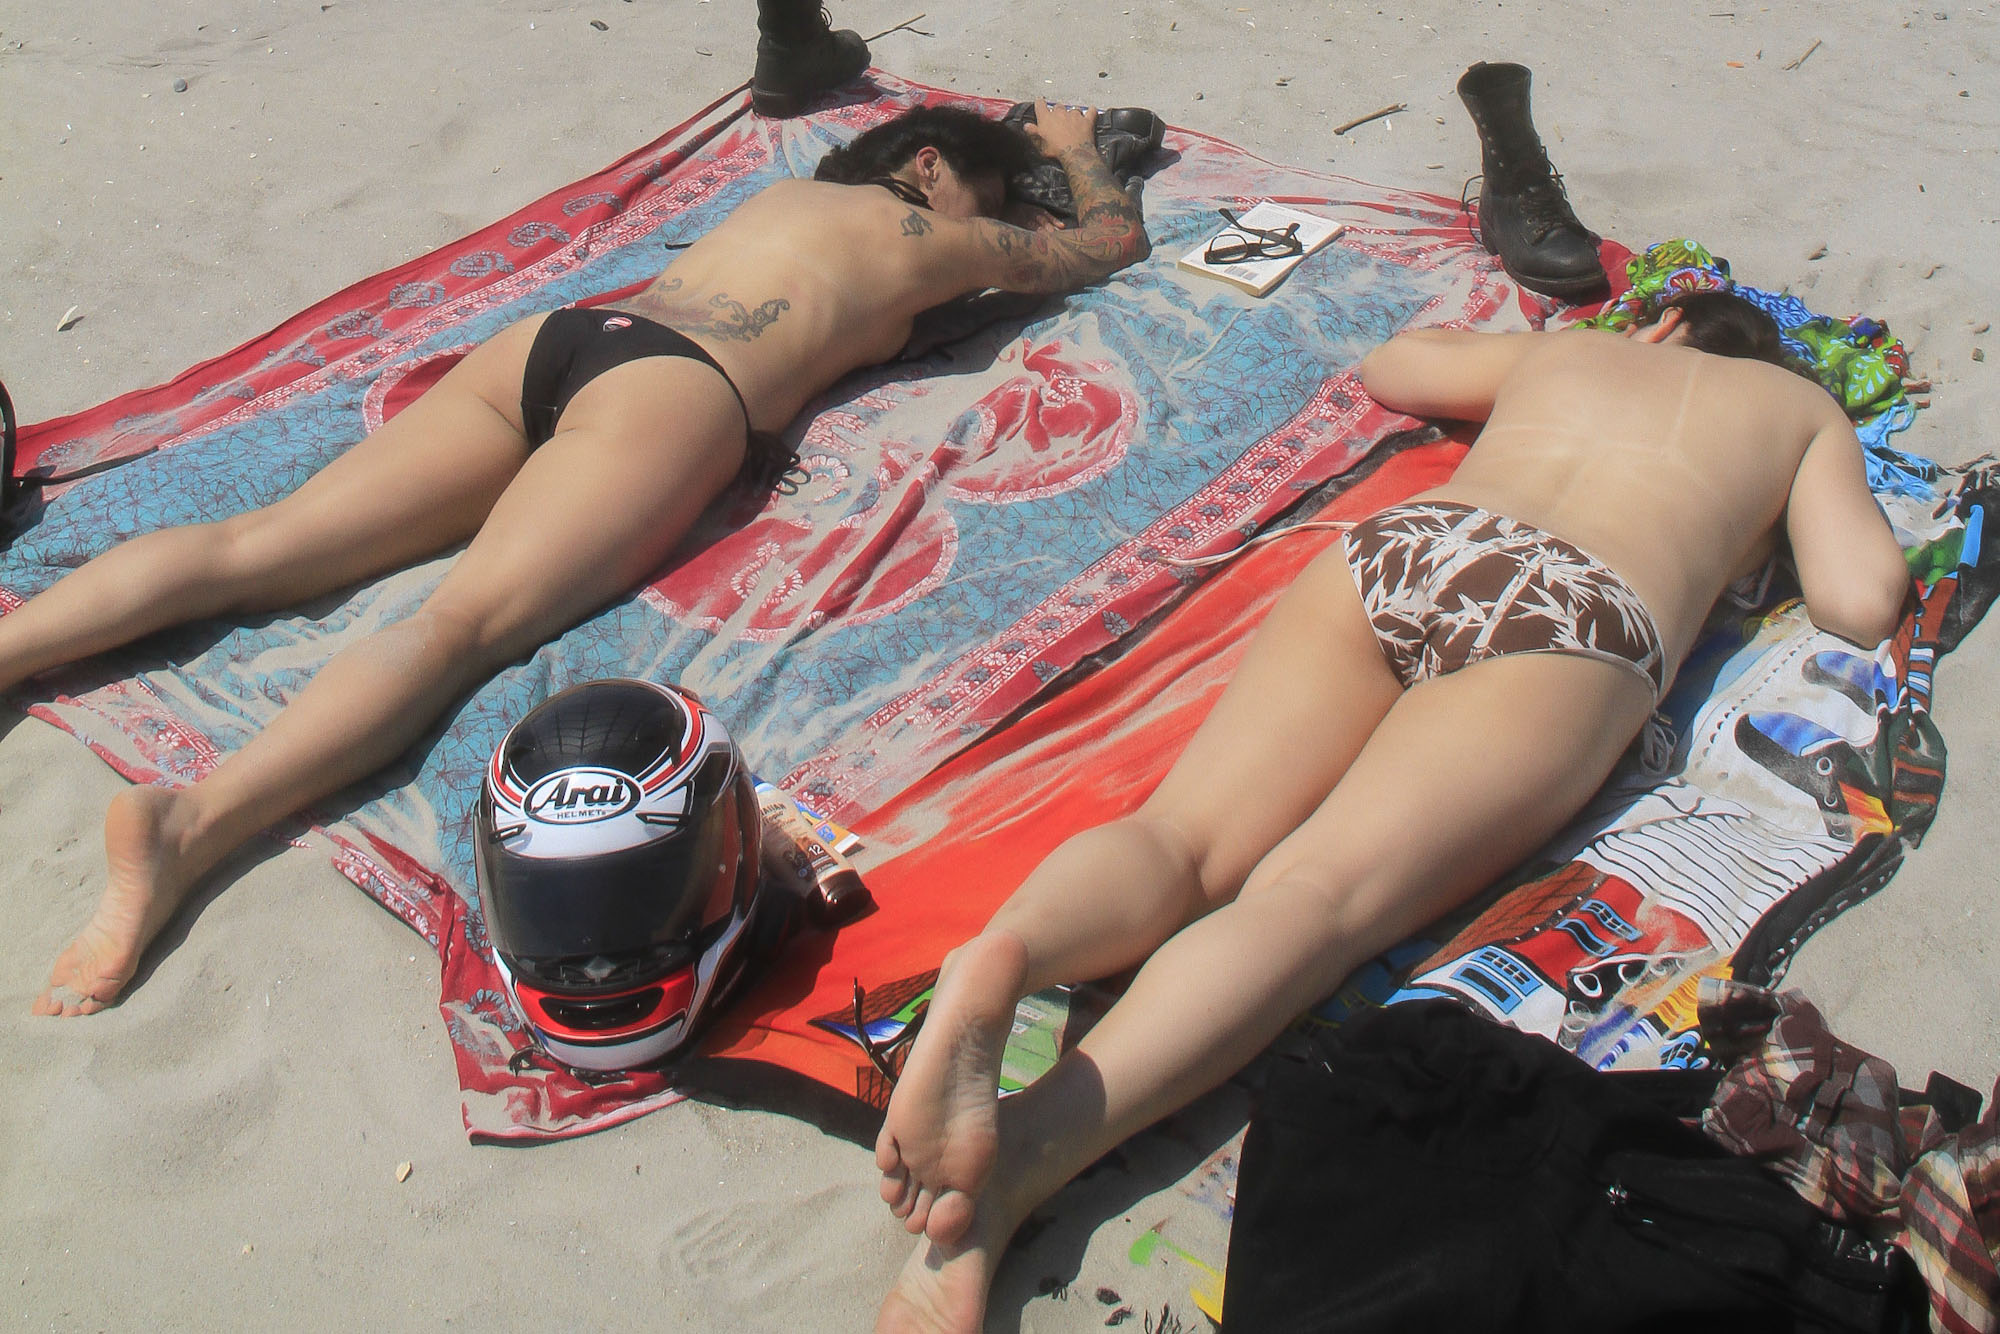 Best of Topless beach pix